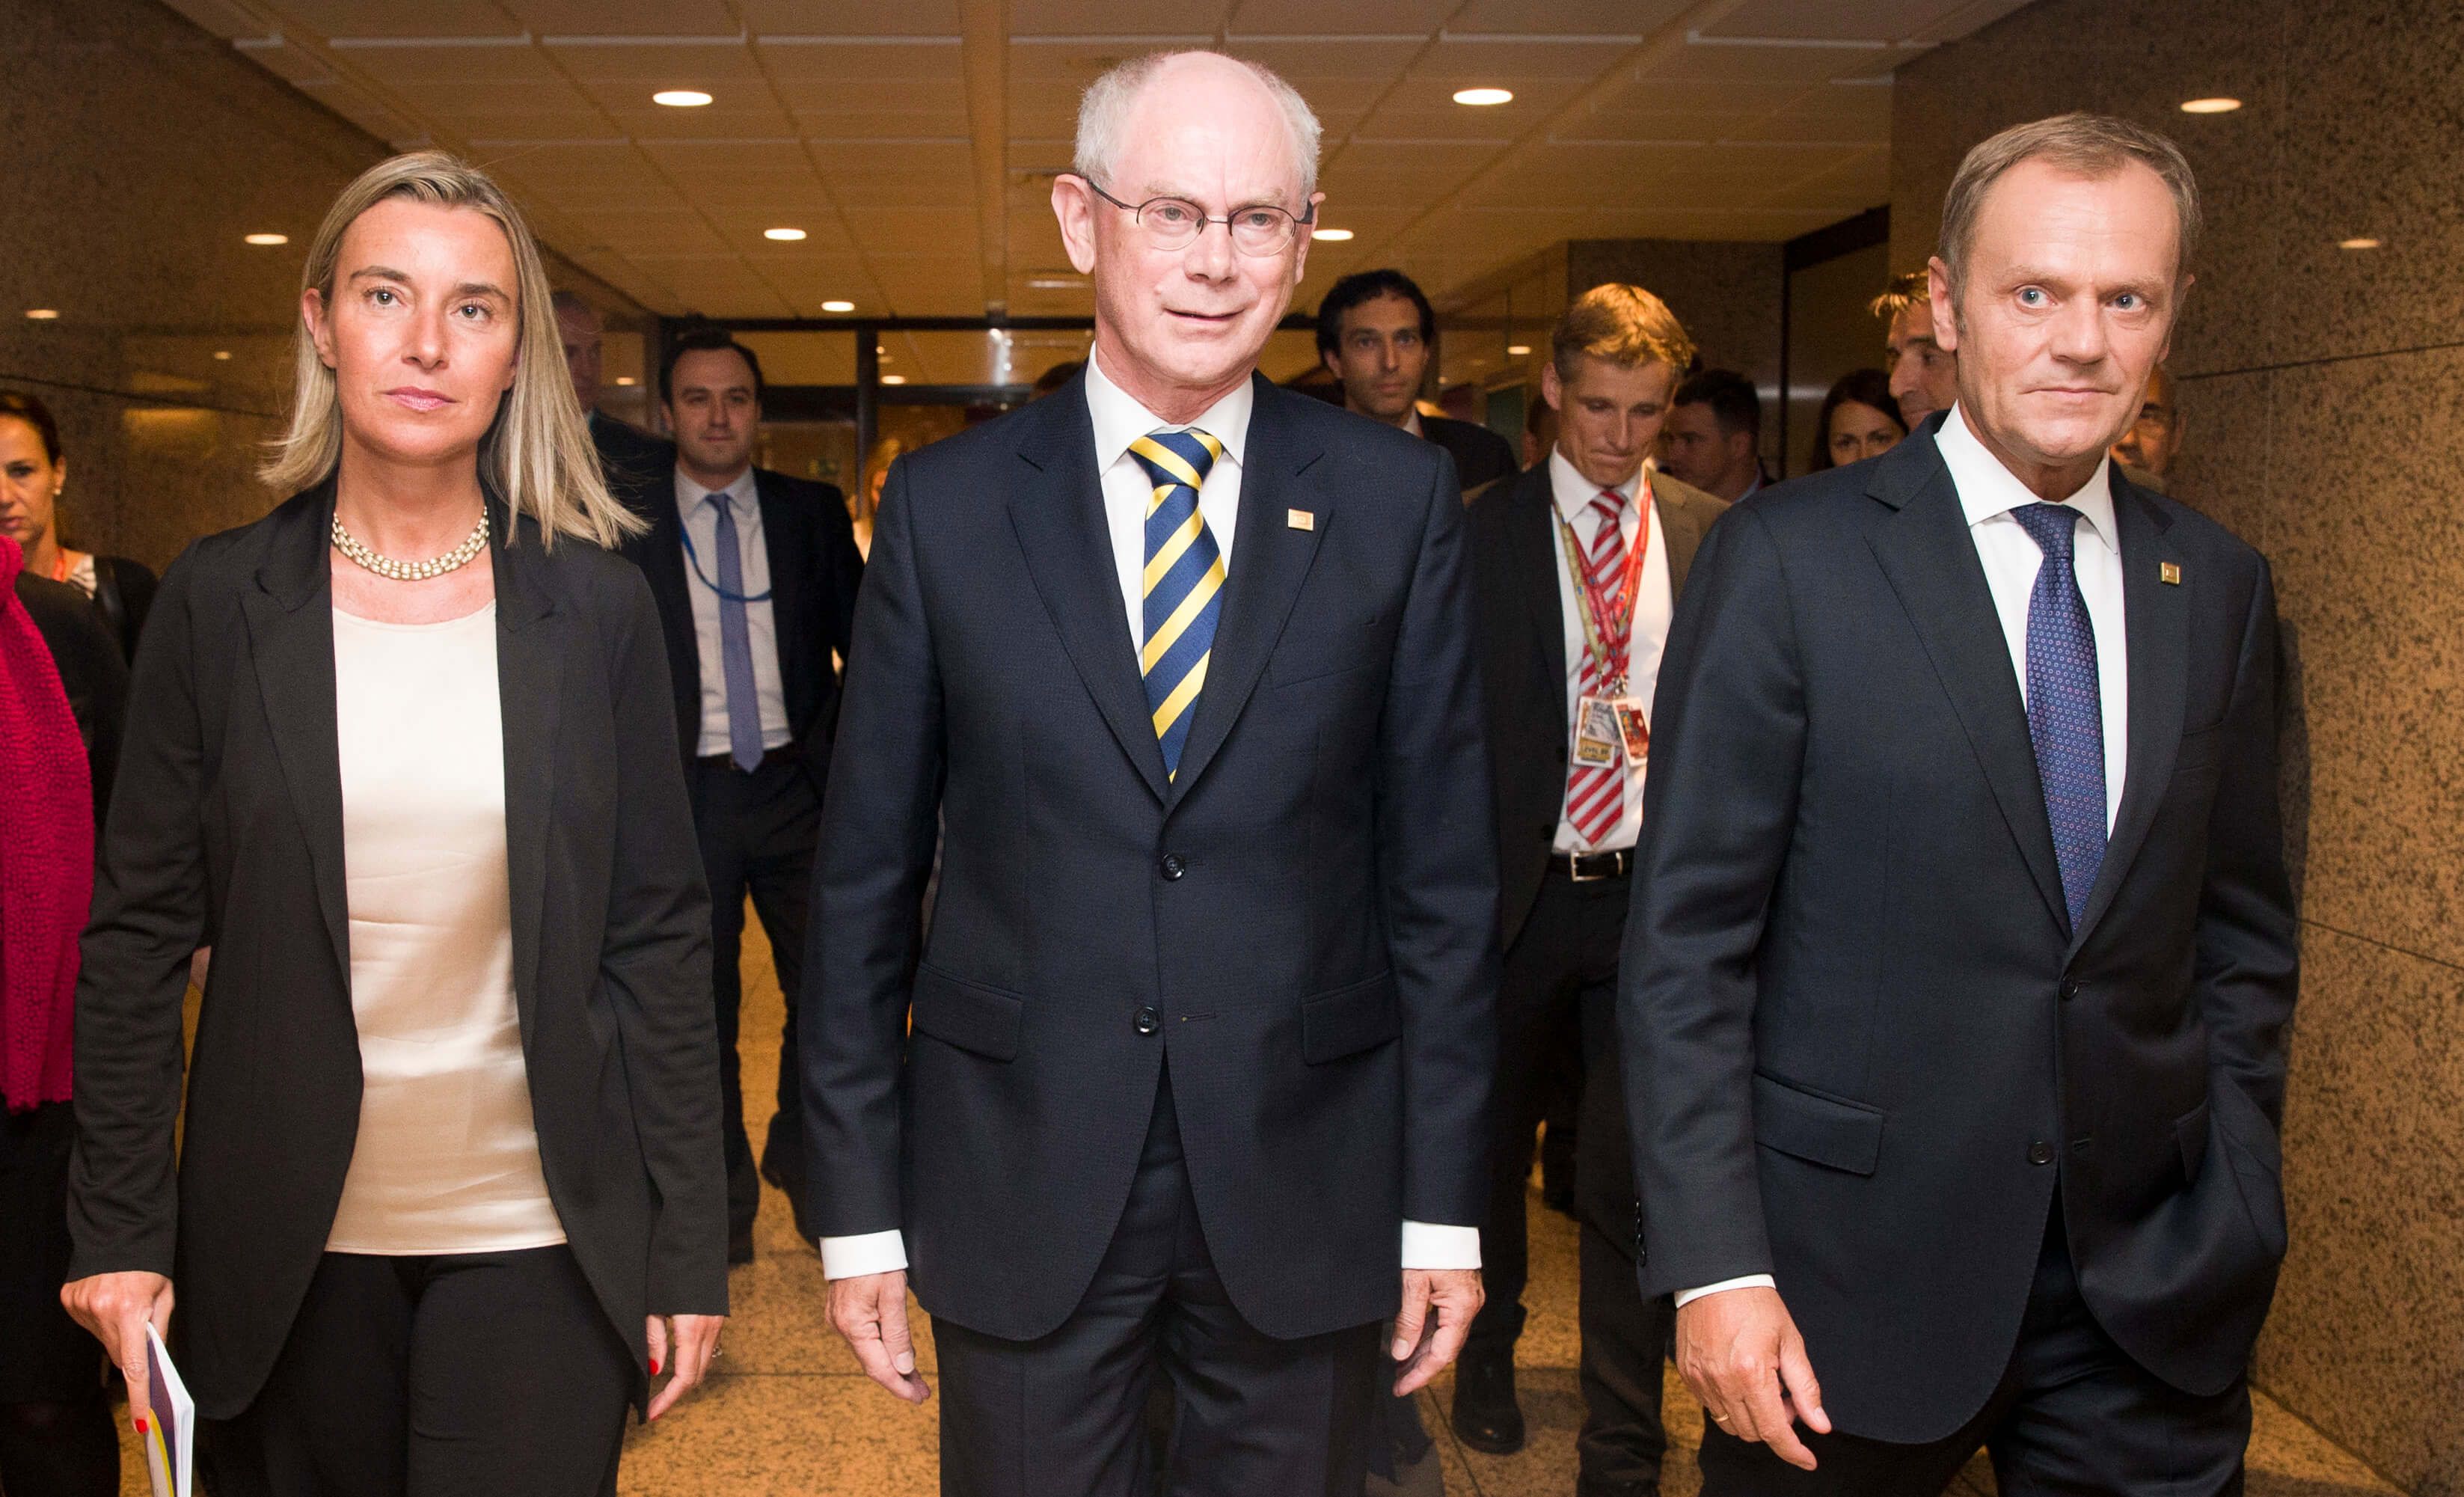 Criekemans-Frederica Mogherini, Herman van Rompuy en Donald Tusk onderweg naar een persconferentie van de Europese Raad, 2014. © European External Action Service - Flickr